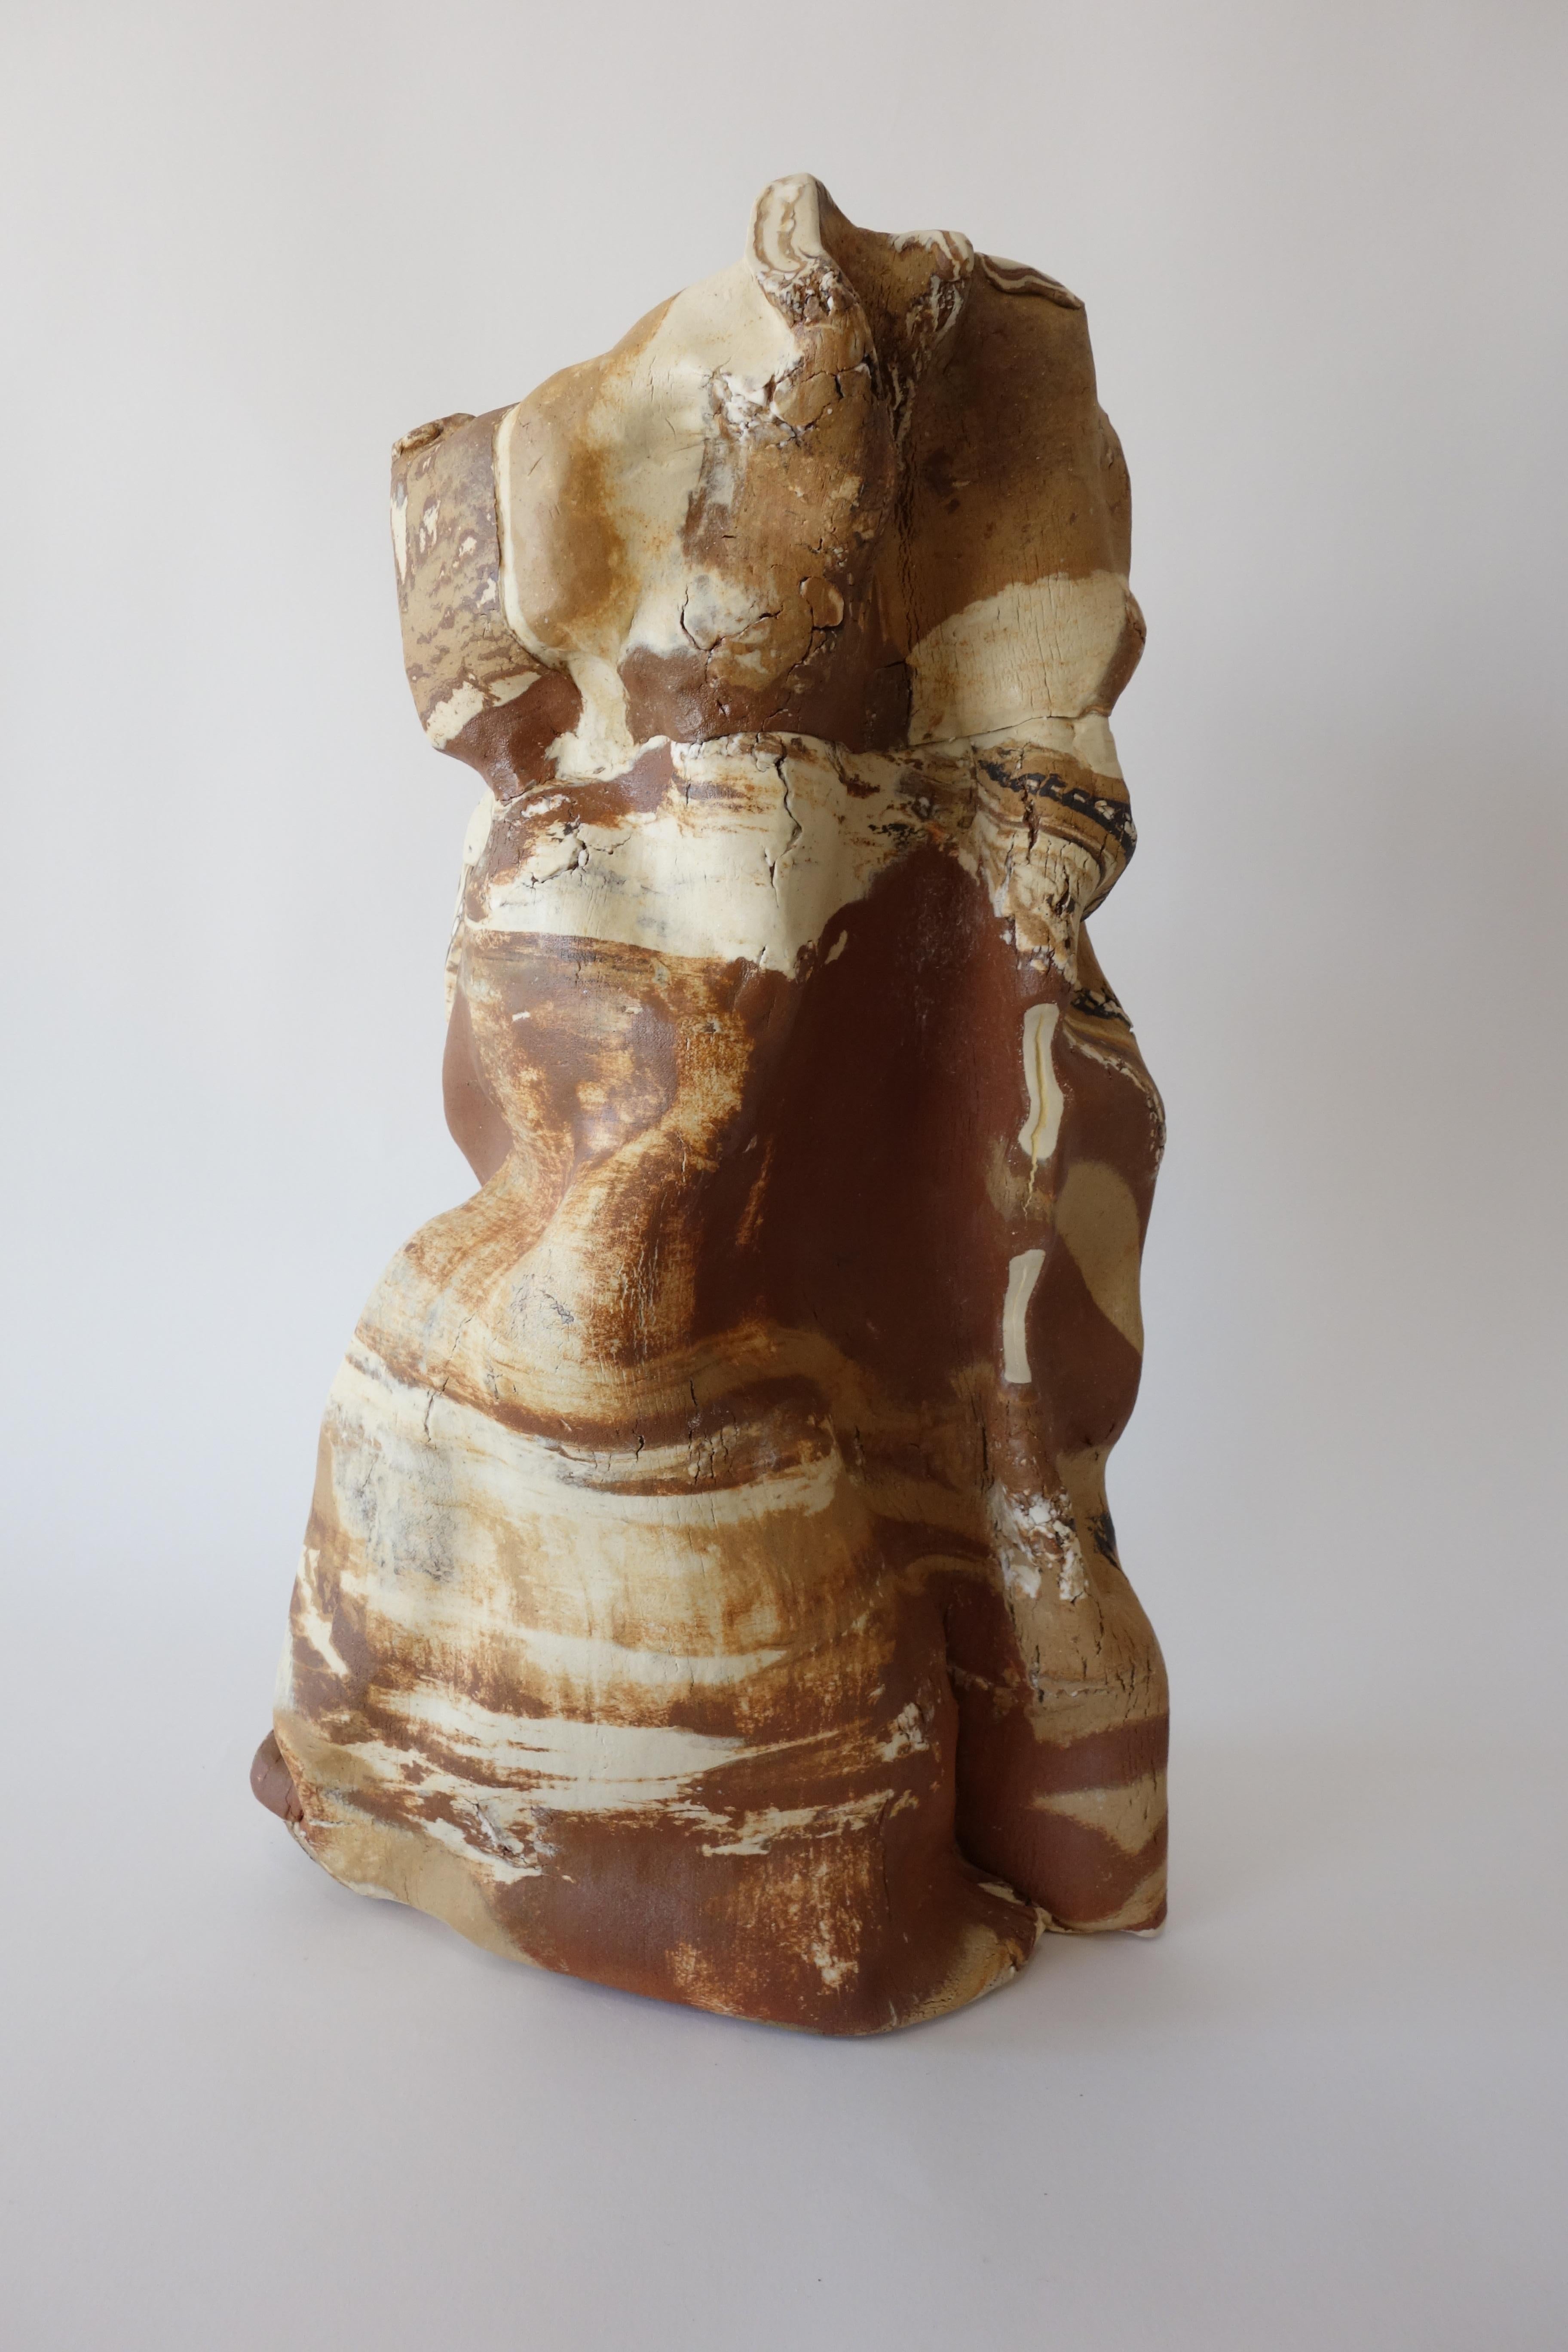 La sculpture en céramique de corps d'argile combinés, des processus uniques développés par Anna Bush Crews, s'appuie sur les qualités inhérentes au matériau, la façon dont il se lisse ou non, la façon dont il s'étire ou se brise dans les actions qui